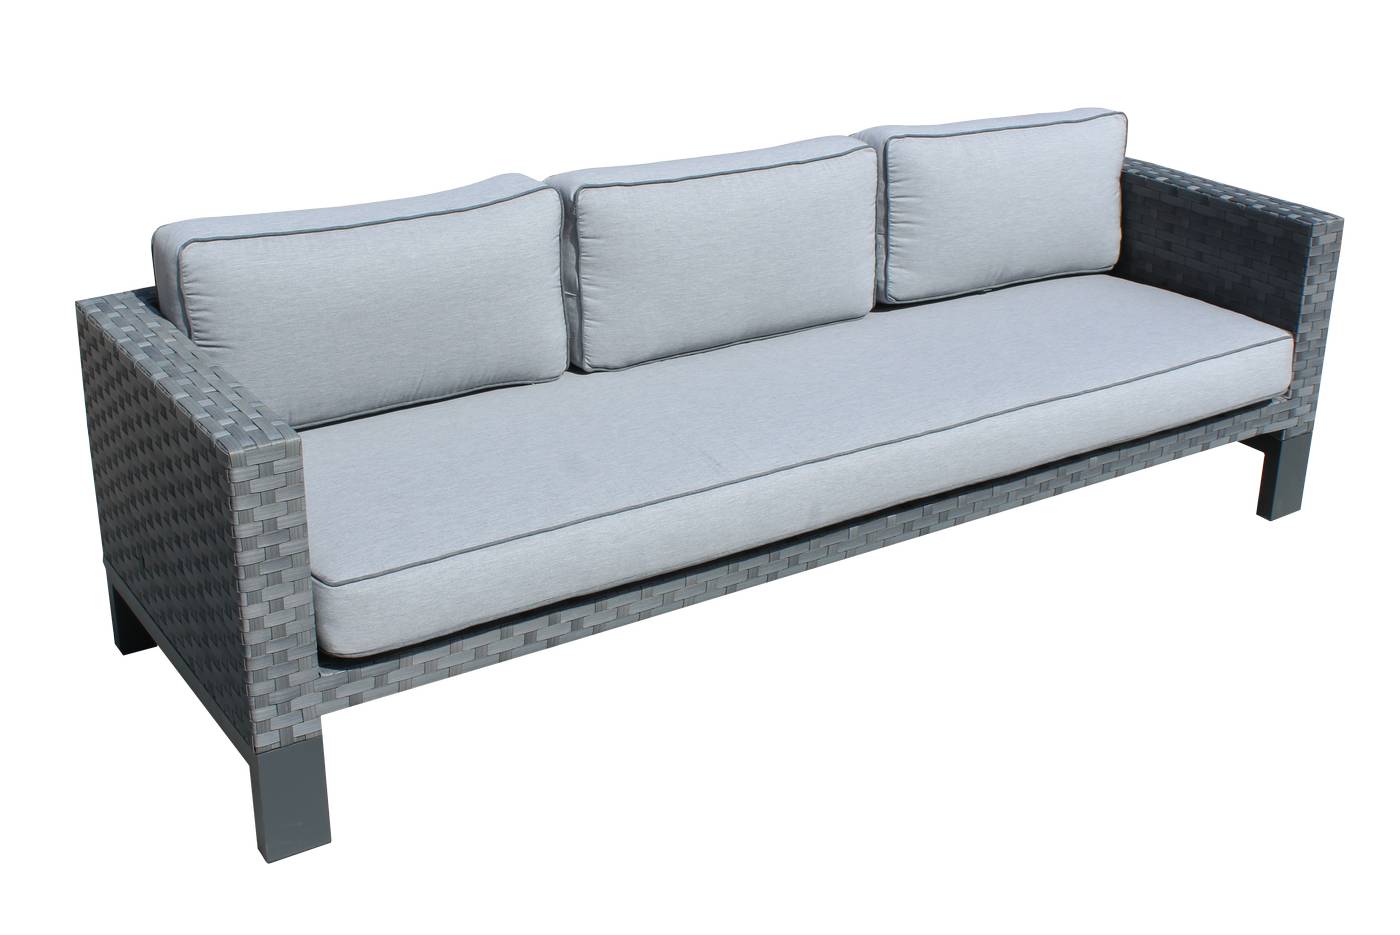 Sofá 3 plazas lujo, con cojines desenfundables. Hecho de aluminio y médula sintética color blanco o antracita.